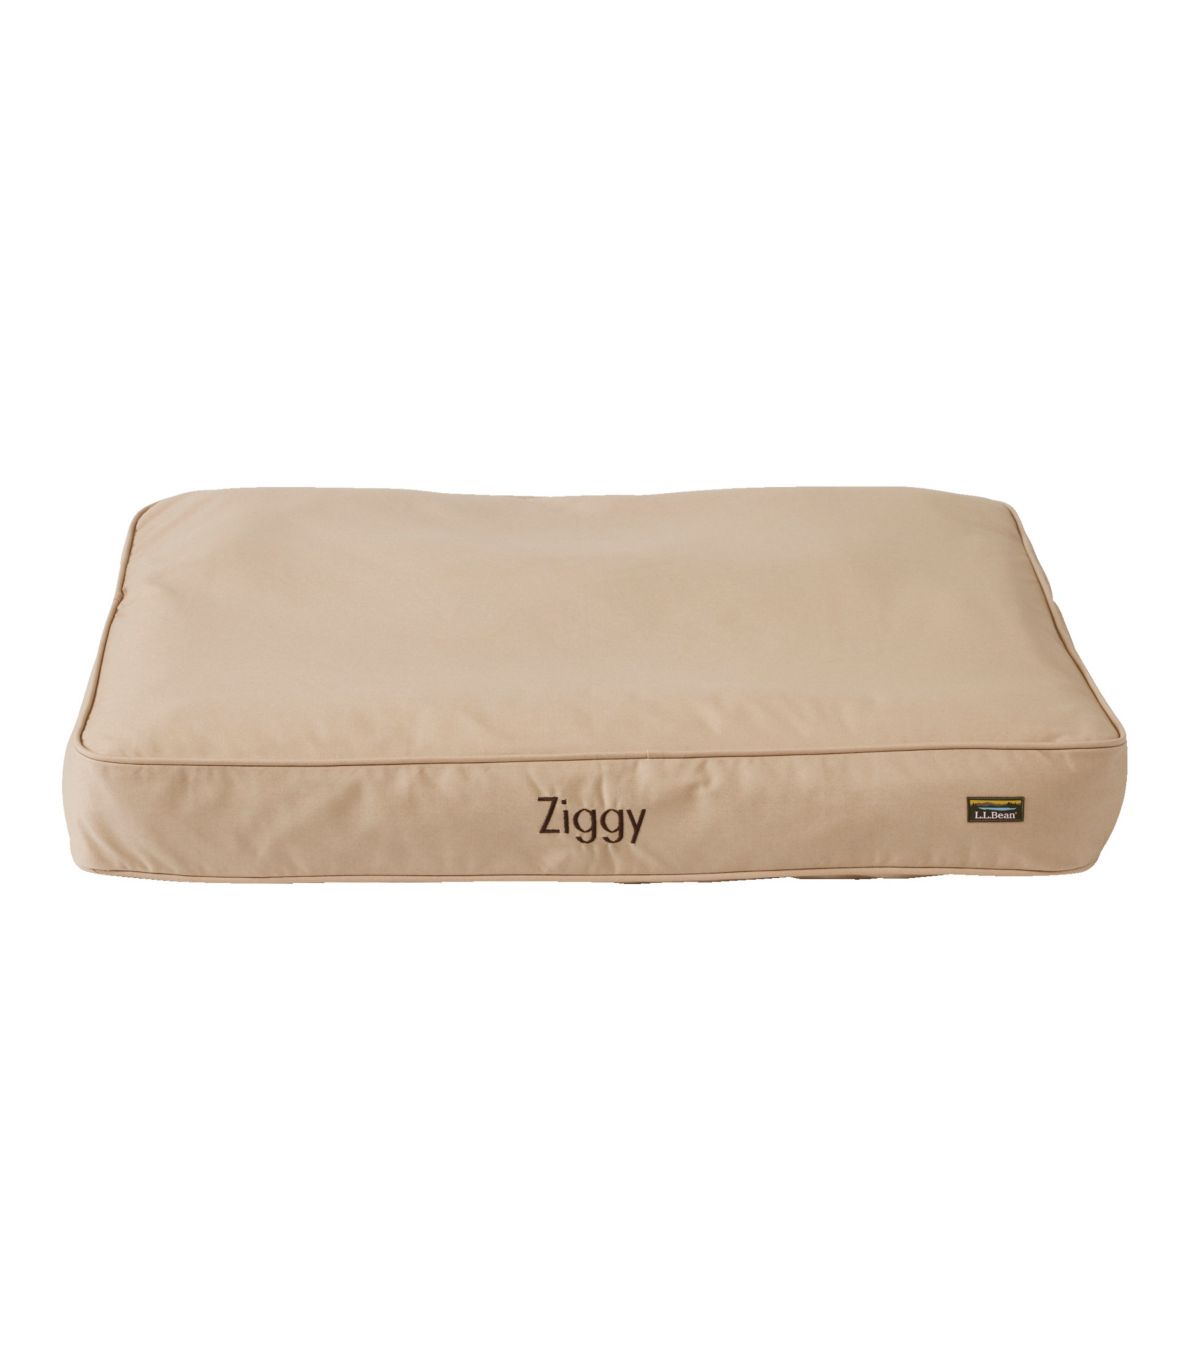 Premium Denim Dog Bed Replacement Cover, Rectangular